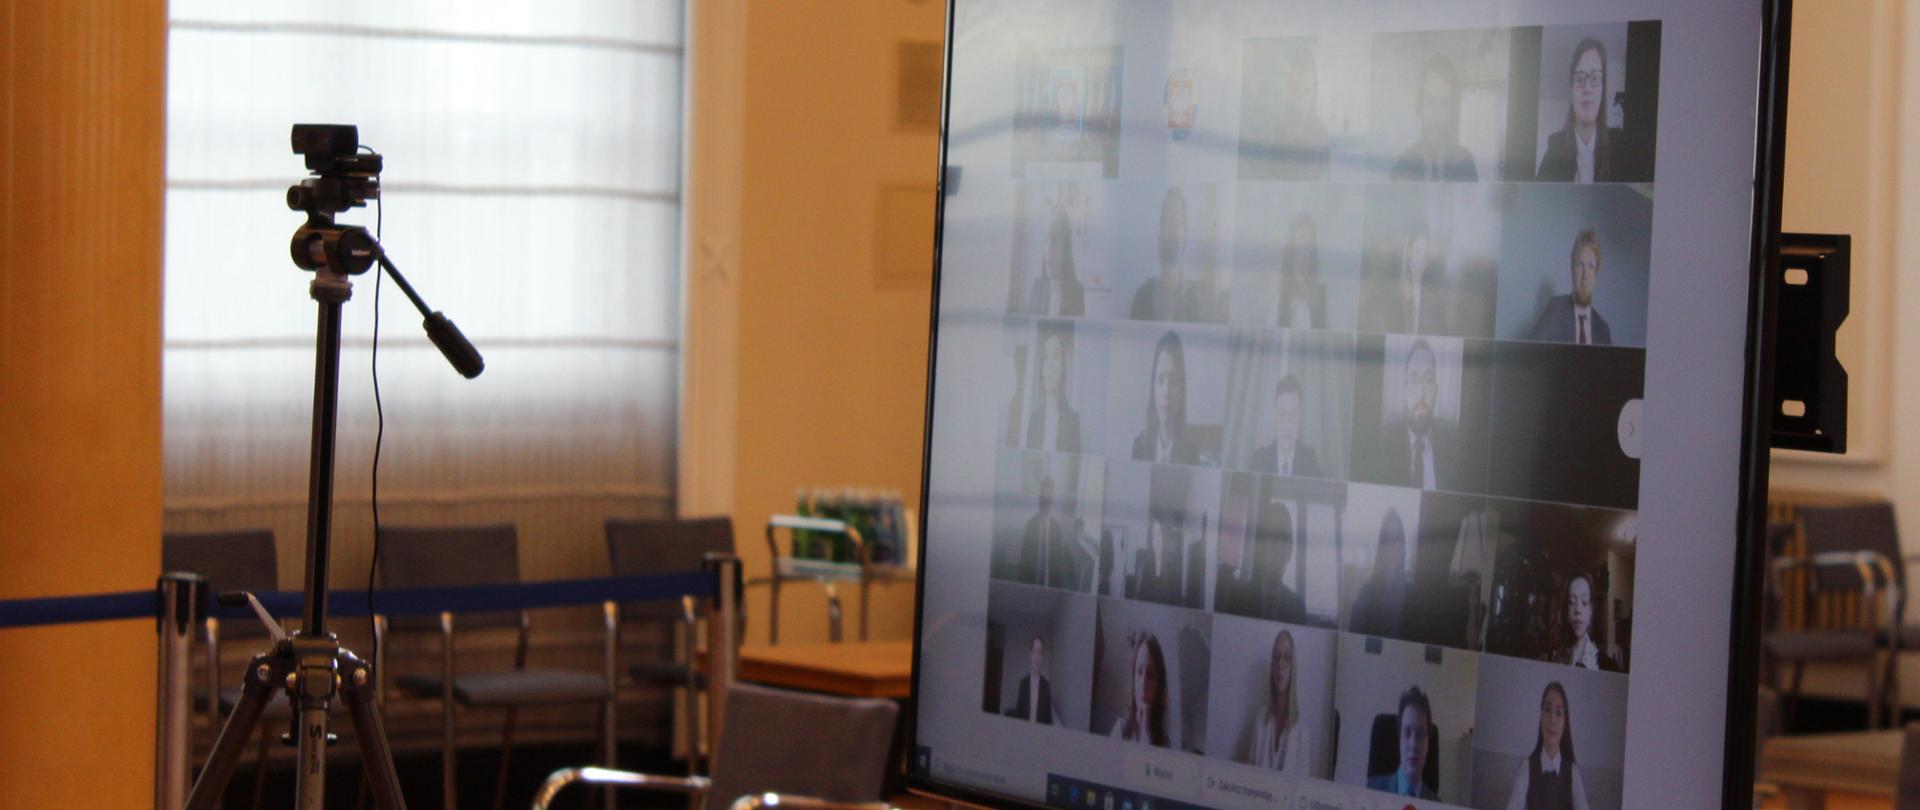 Ekran telewizora na którym wyświetlani są uczestnicy wideokonferencji. Obok kamera. W tle okno